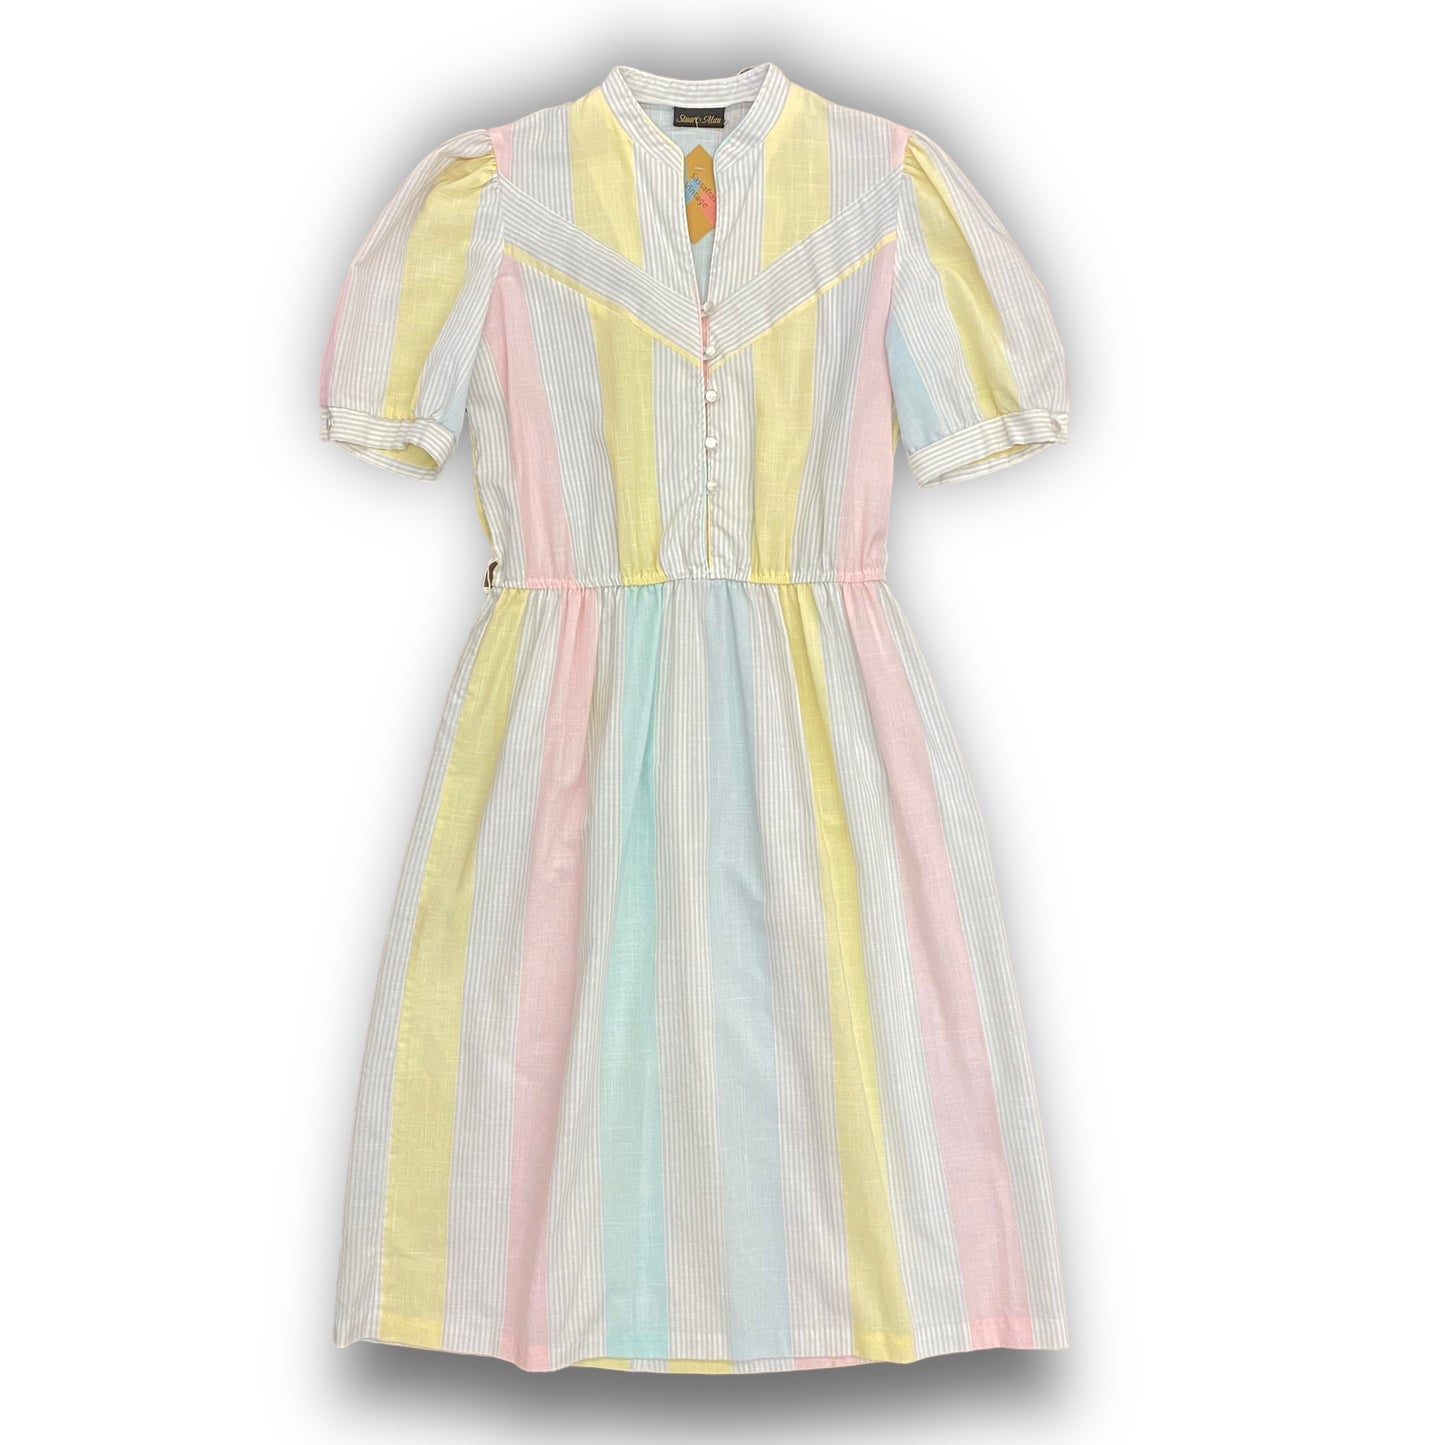 Stuart Alan Pastel Striped Dress - Size Medium/Large